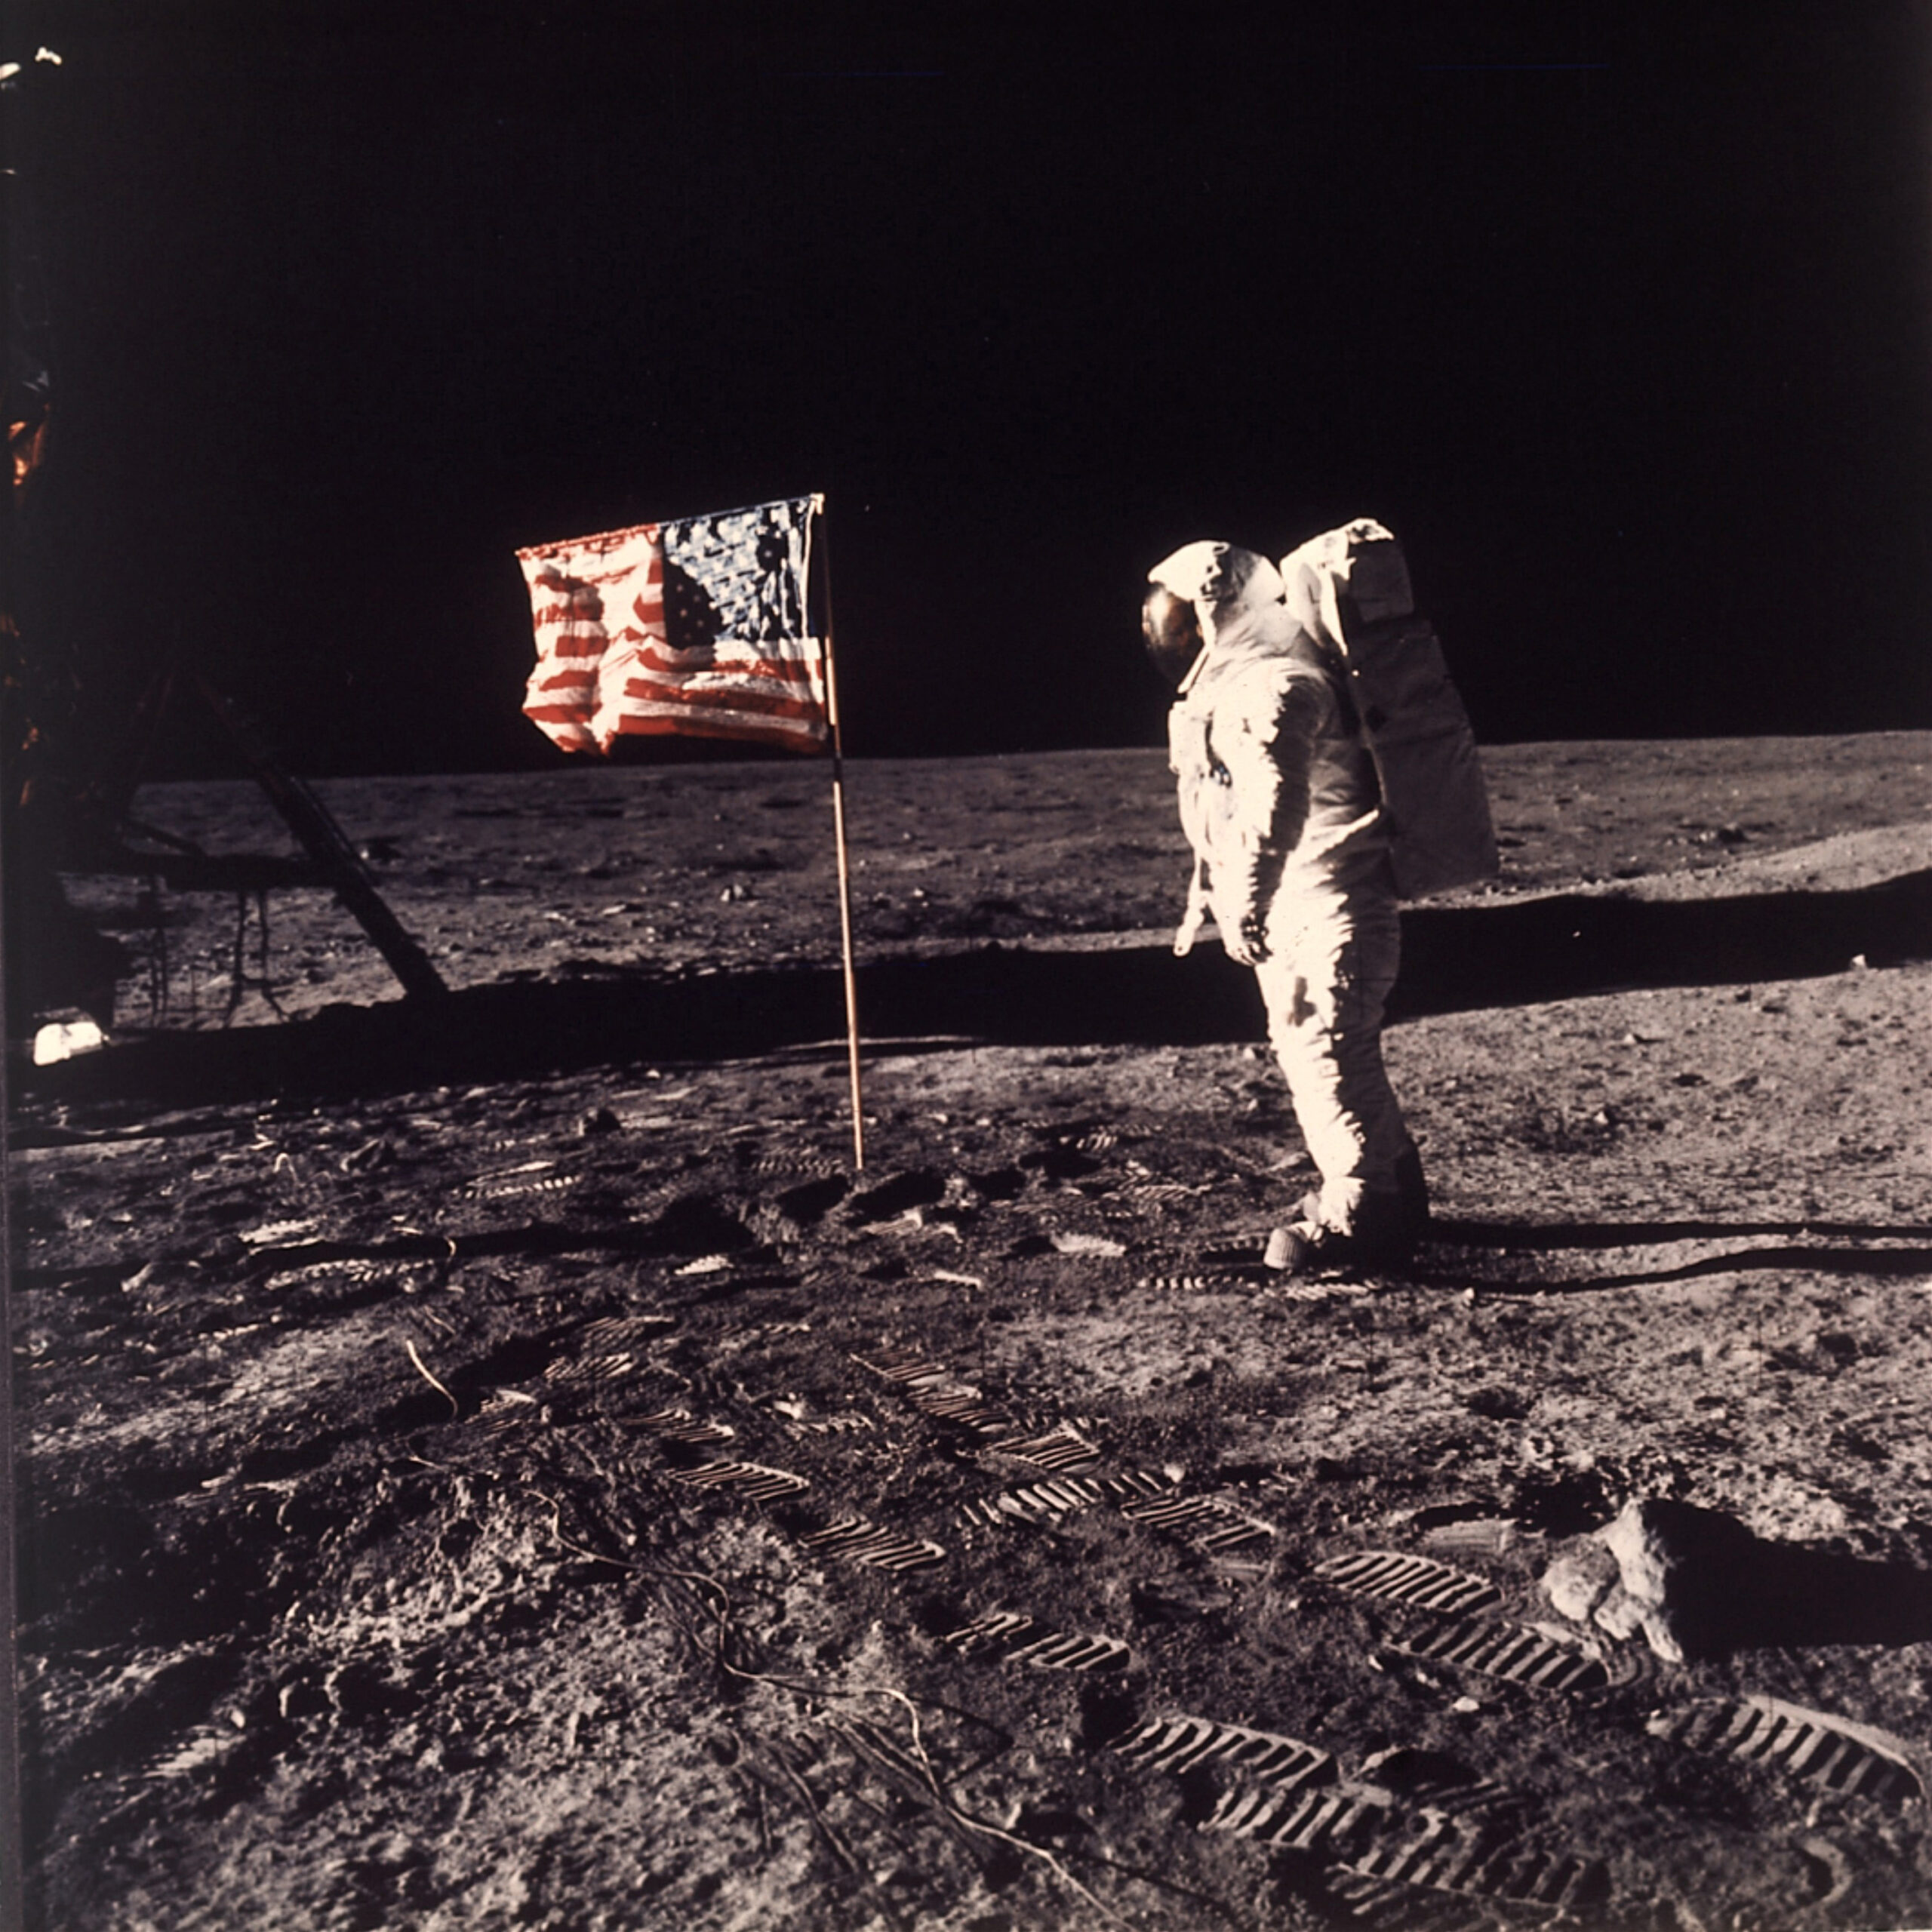 Astronaut Edwin E. "Buzz" Aldrin Jr. poses for a photograph on the moon